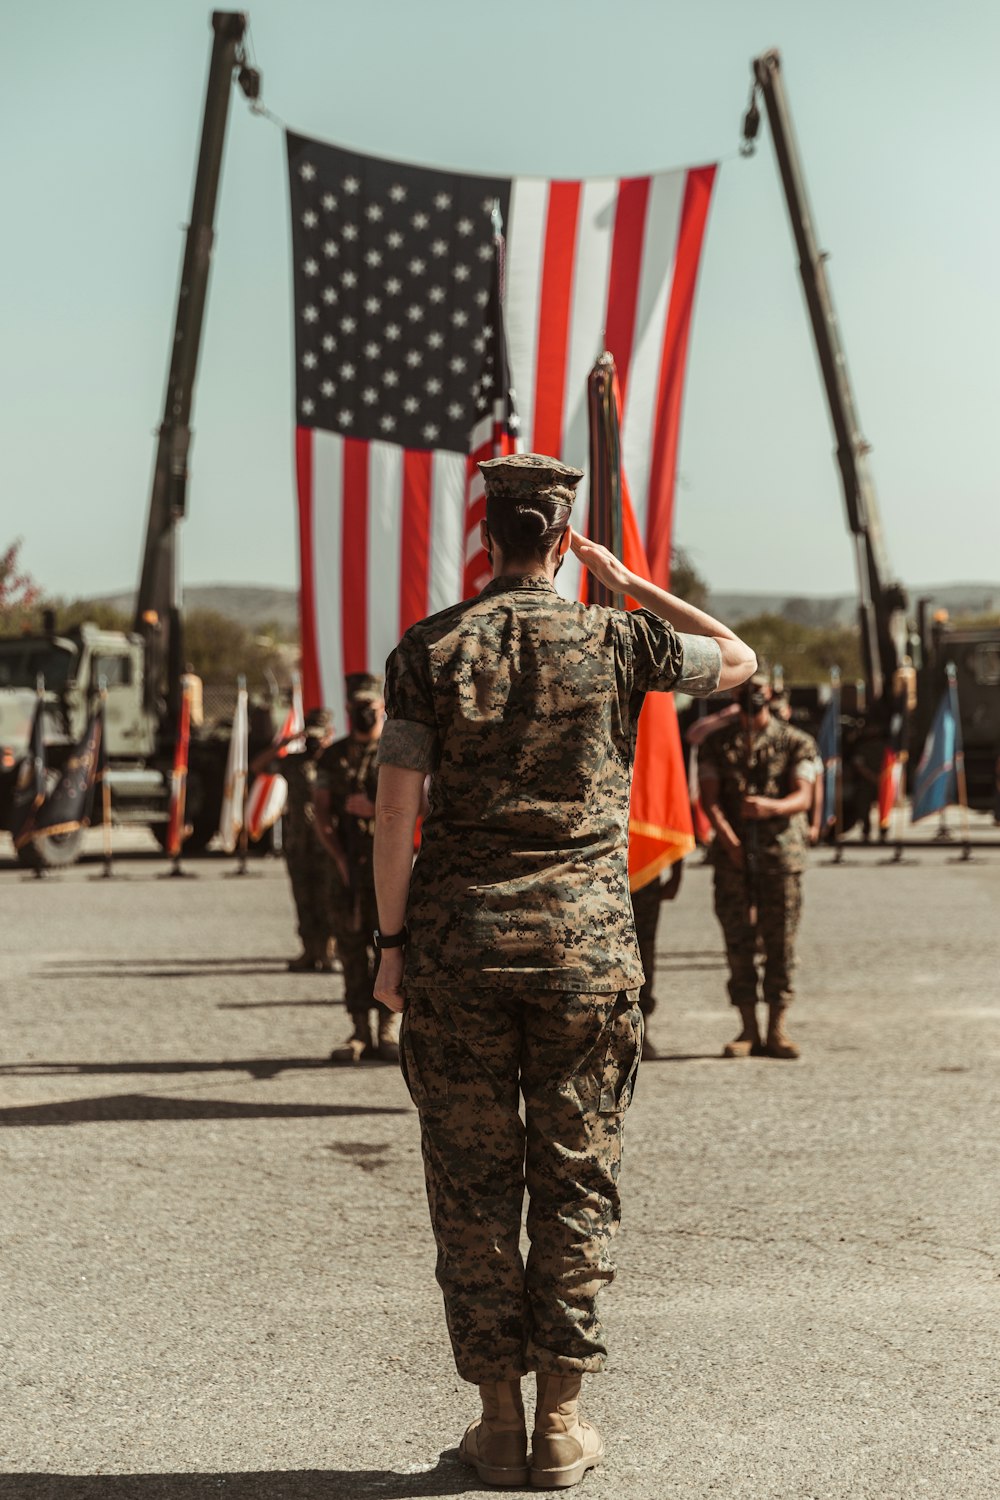 Eine Gruppe von Menschen in Militäruniformen, die amerikanische Flaggen halten